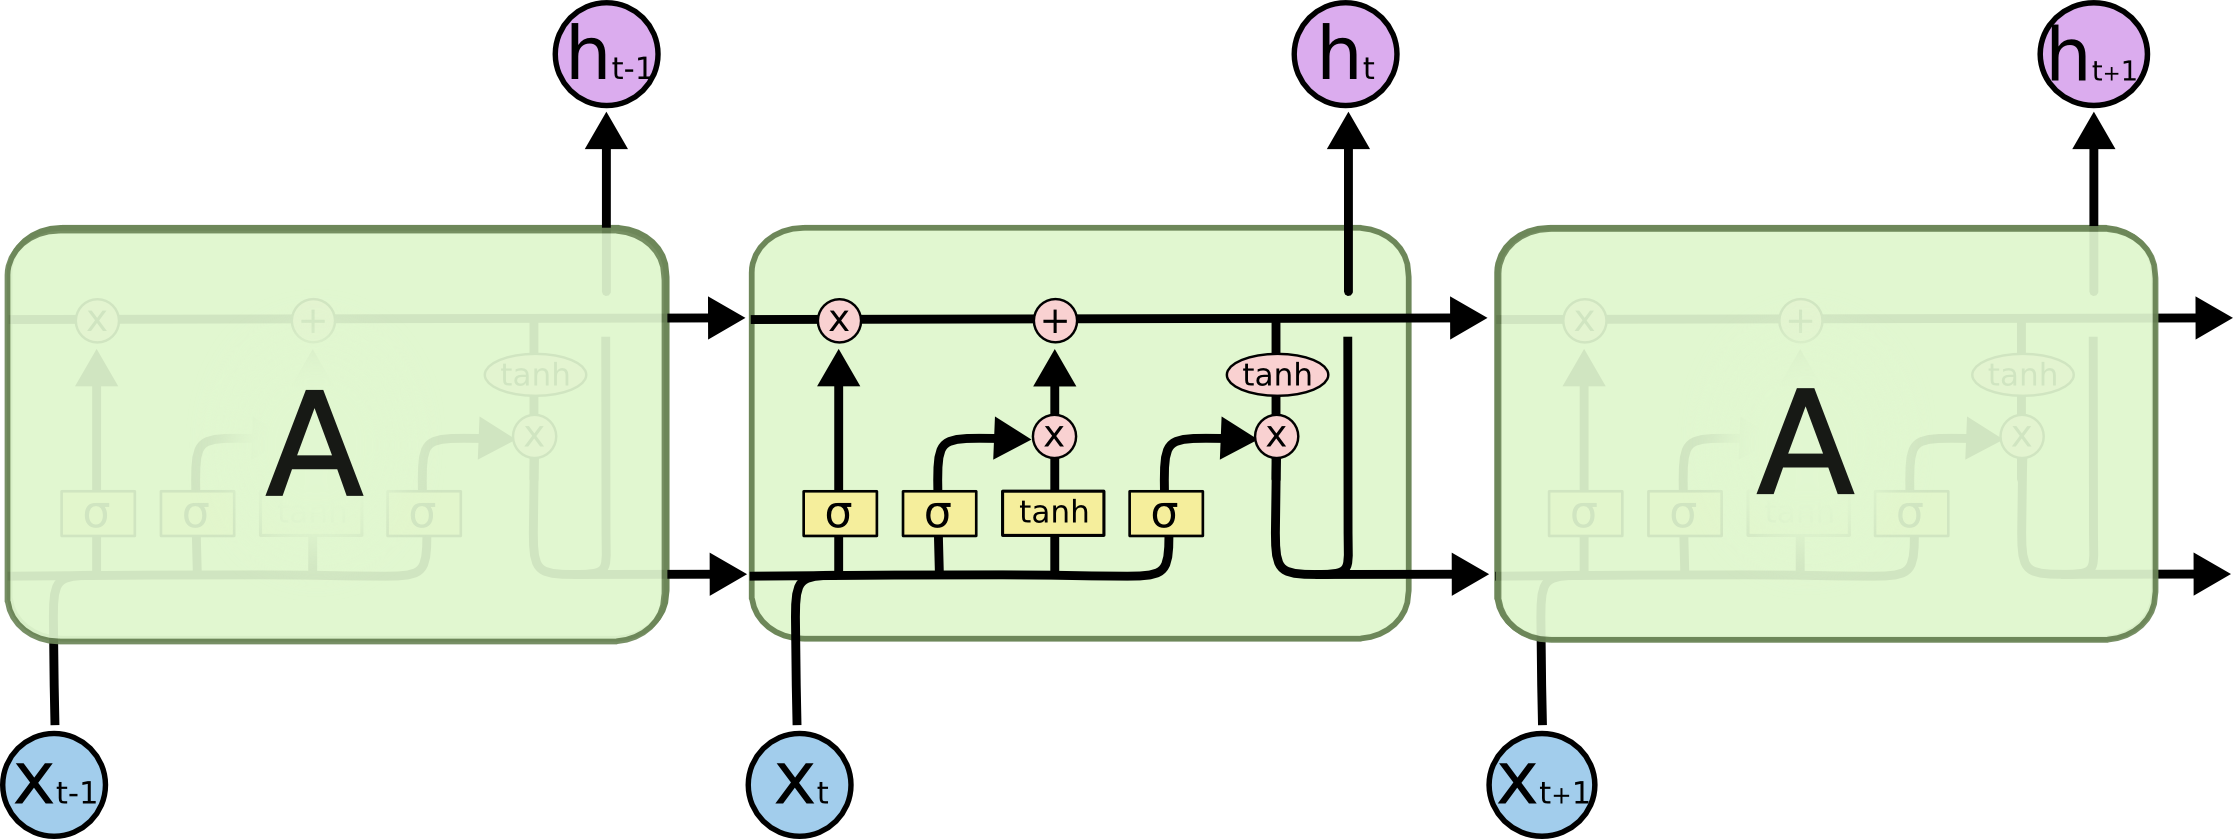 lstm-diagram